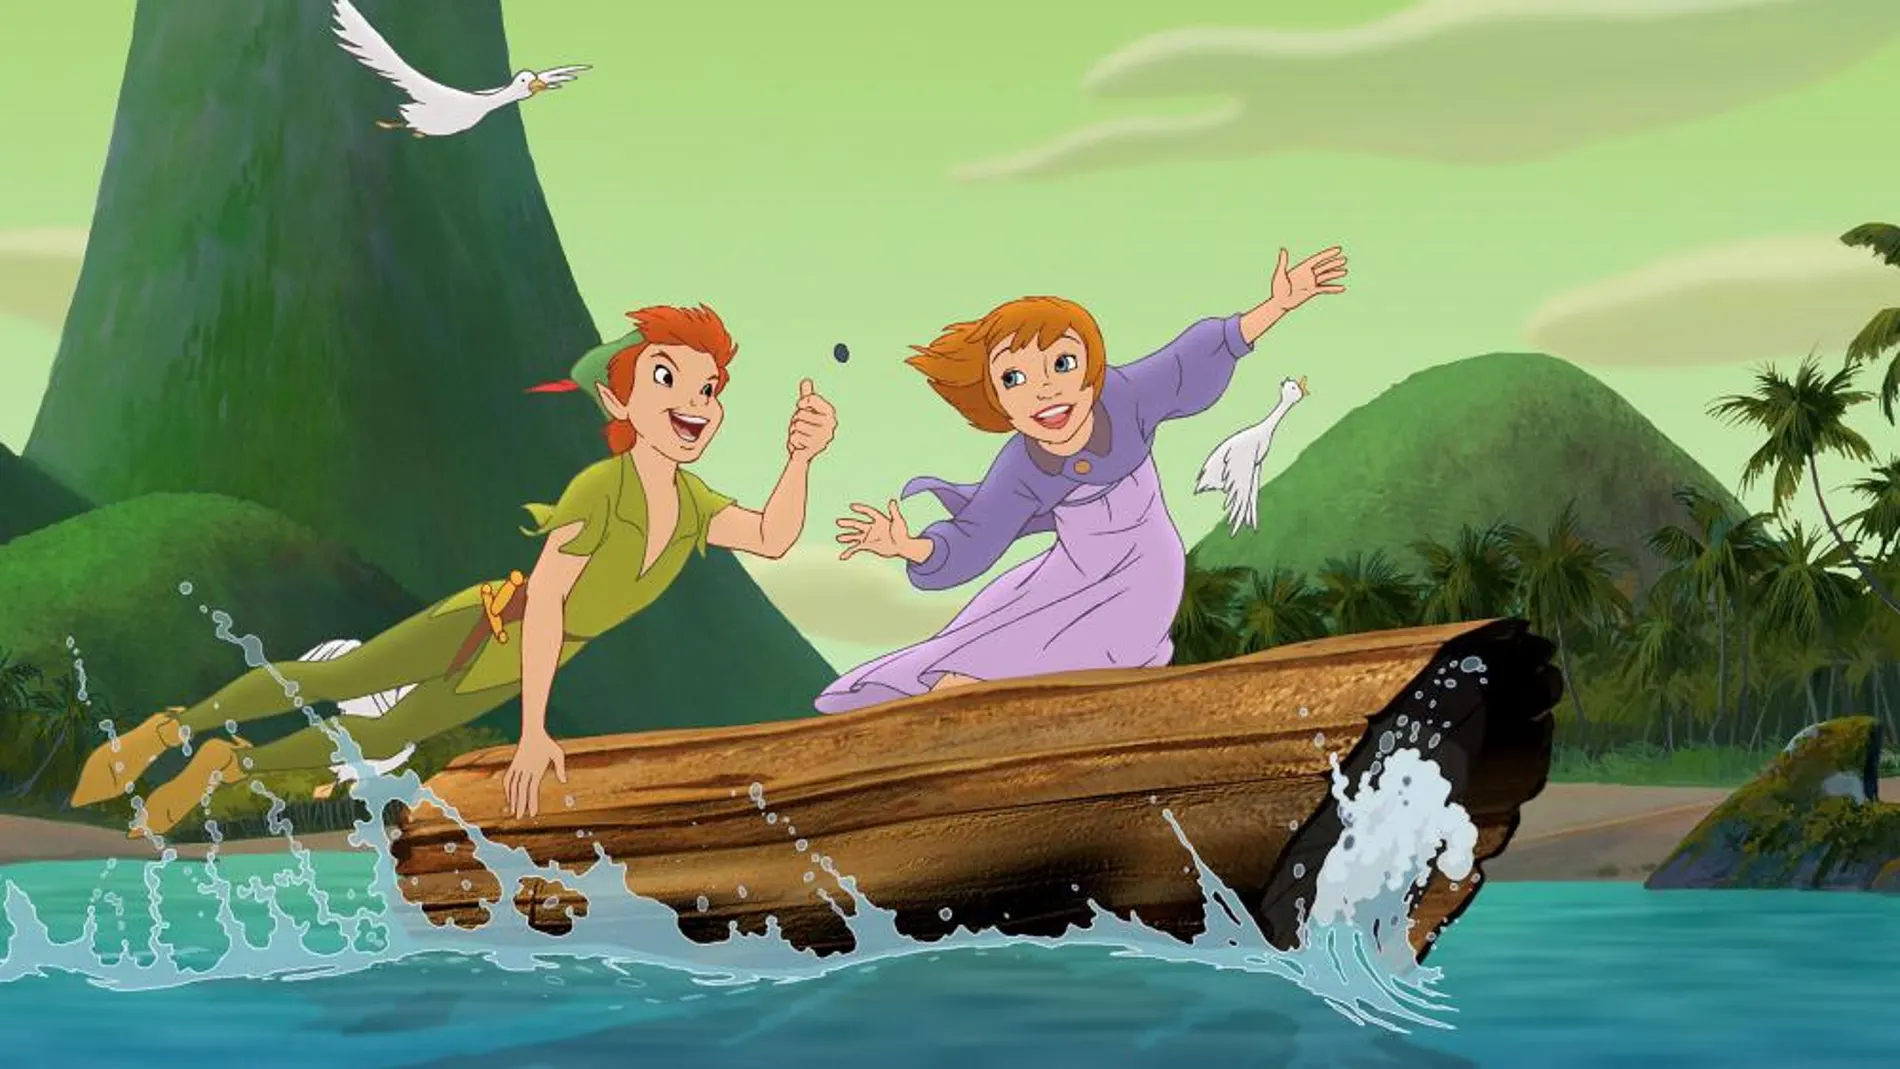 La gerascofobia es un miedo irracional a dejar de ser un eterno niño, como Peter Pan